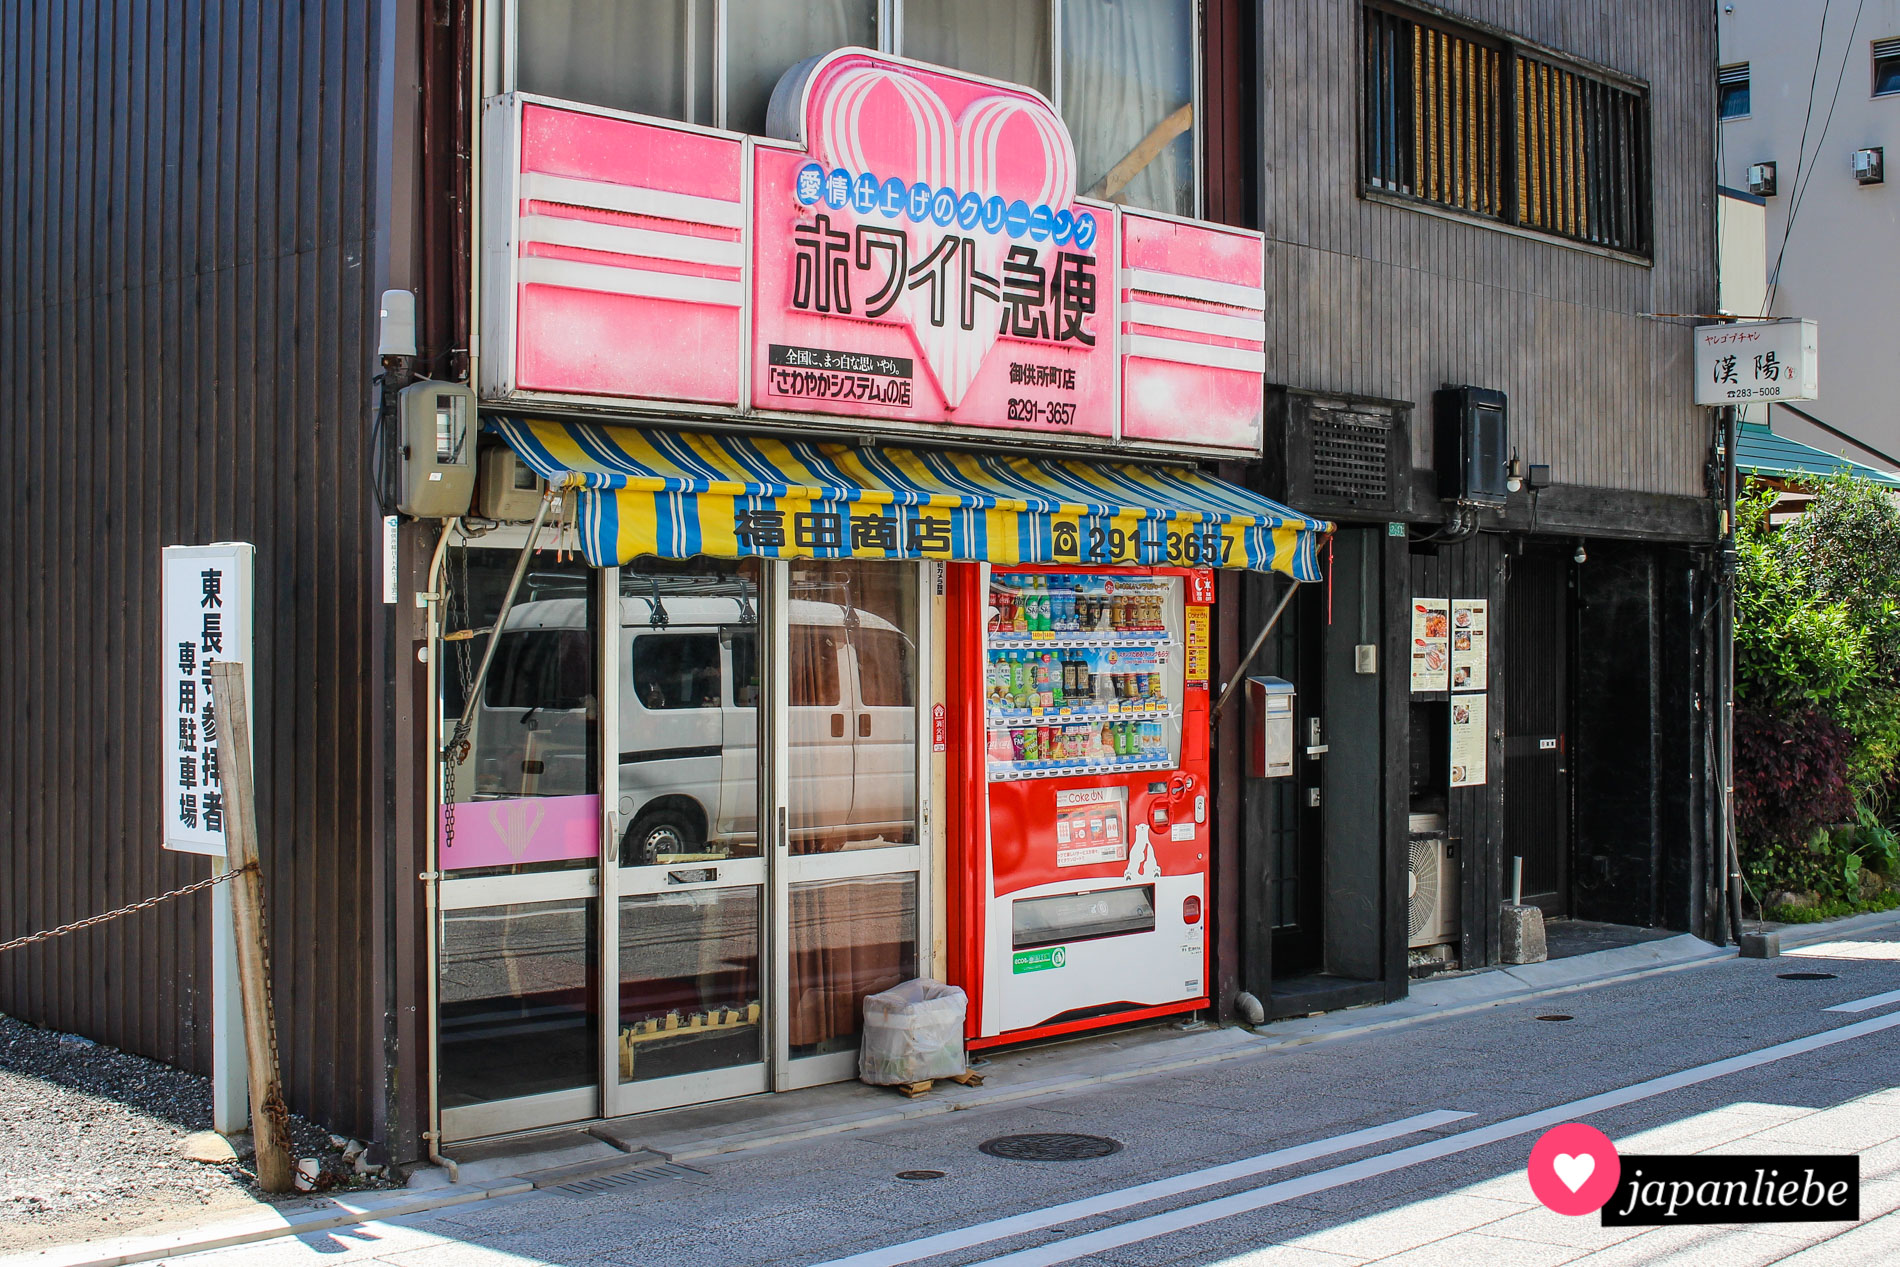 Platz für einen Getränkeautomaten ist in der kleinsten Nische, so wie hier an der Fassade einer Reinigung in Fukuoka.